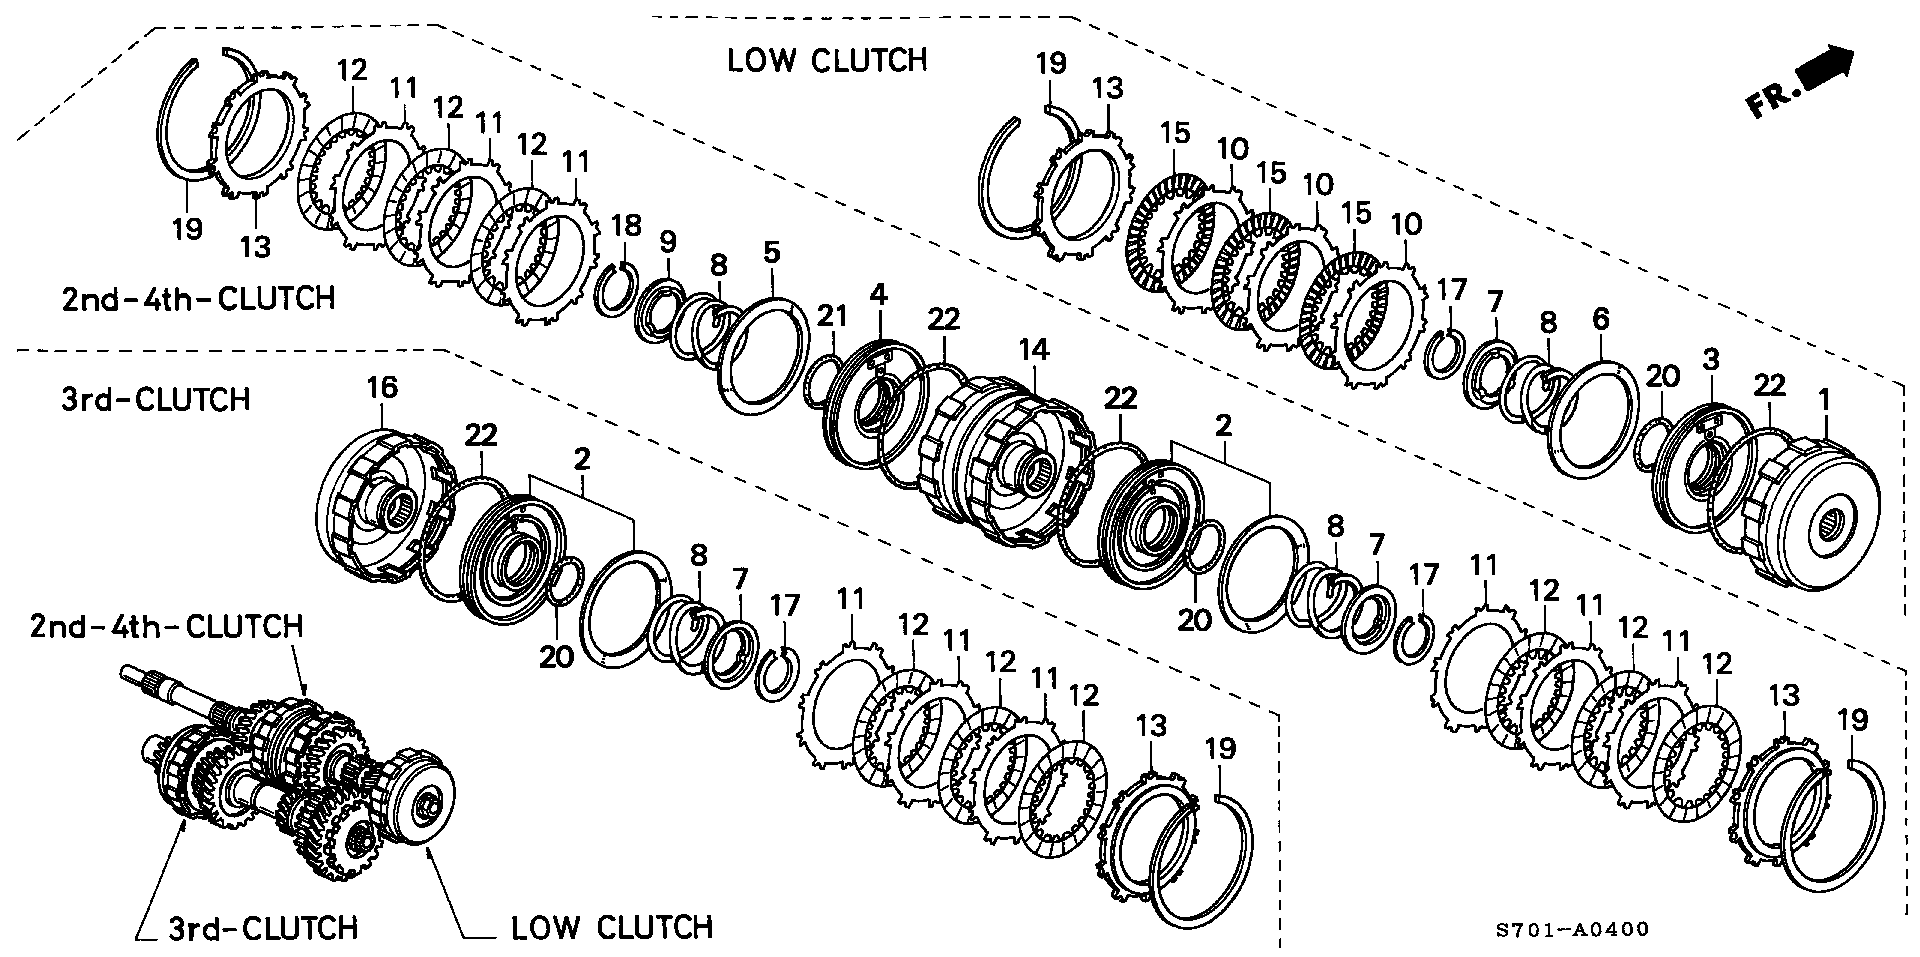 CLUTCH(2WD)(-110)